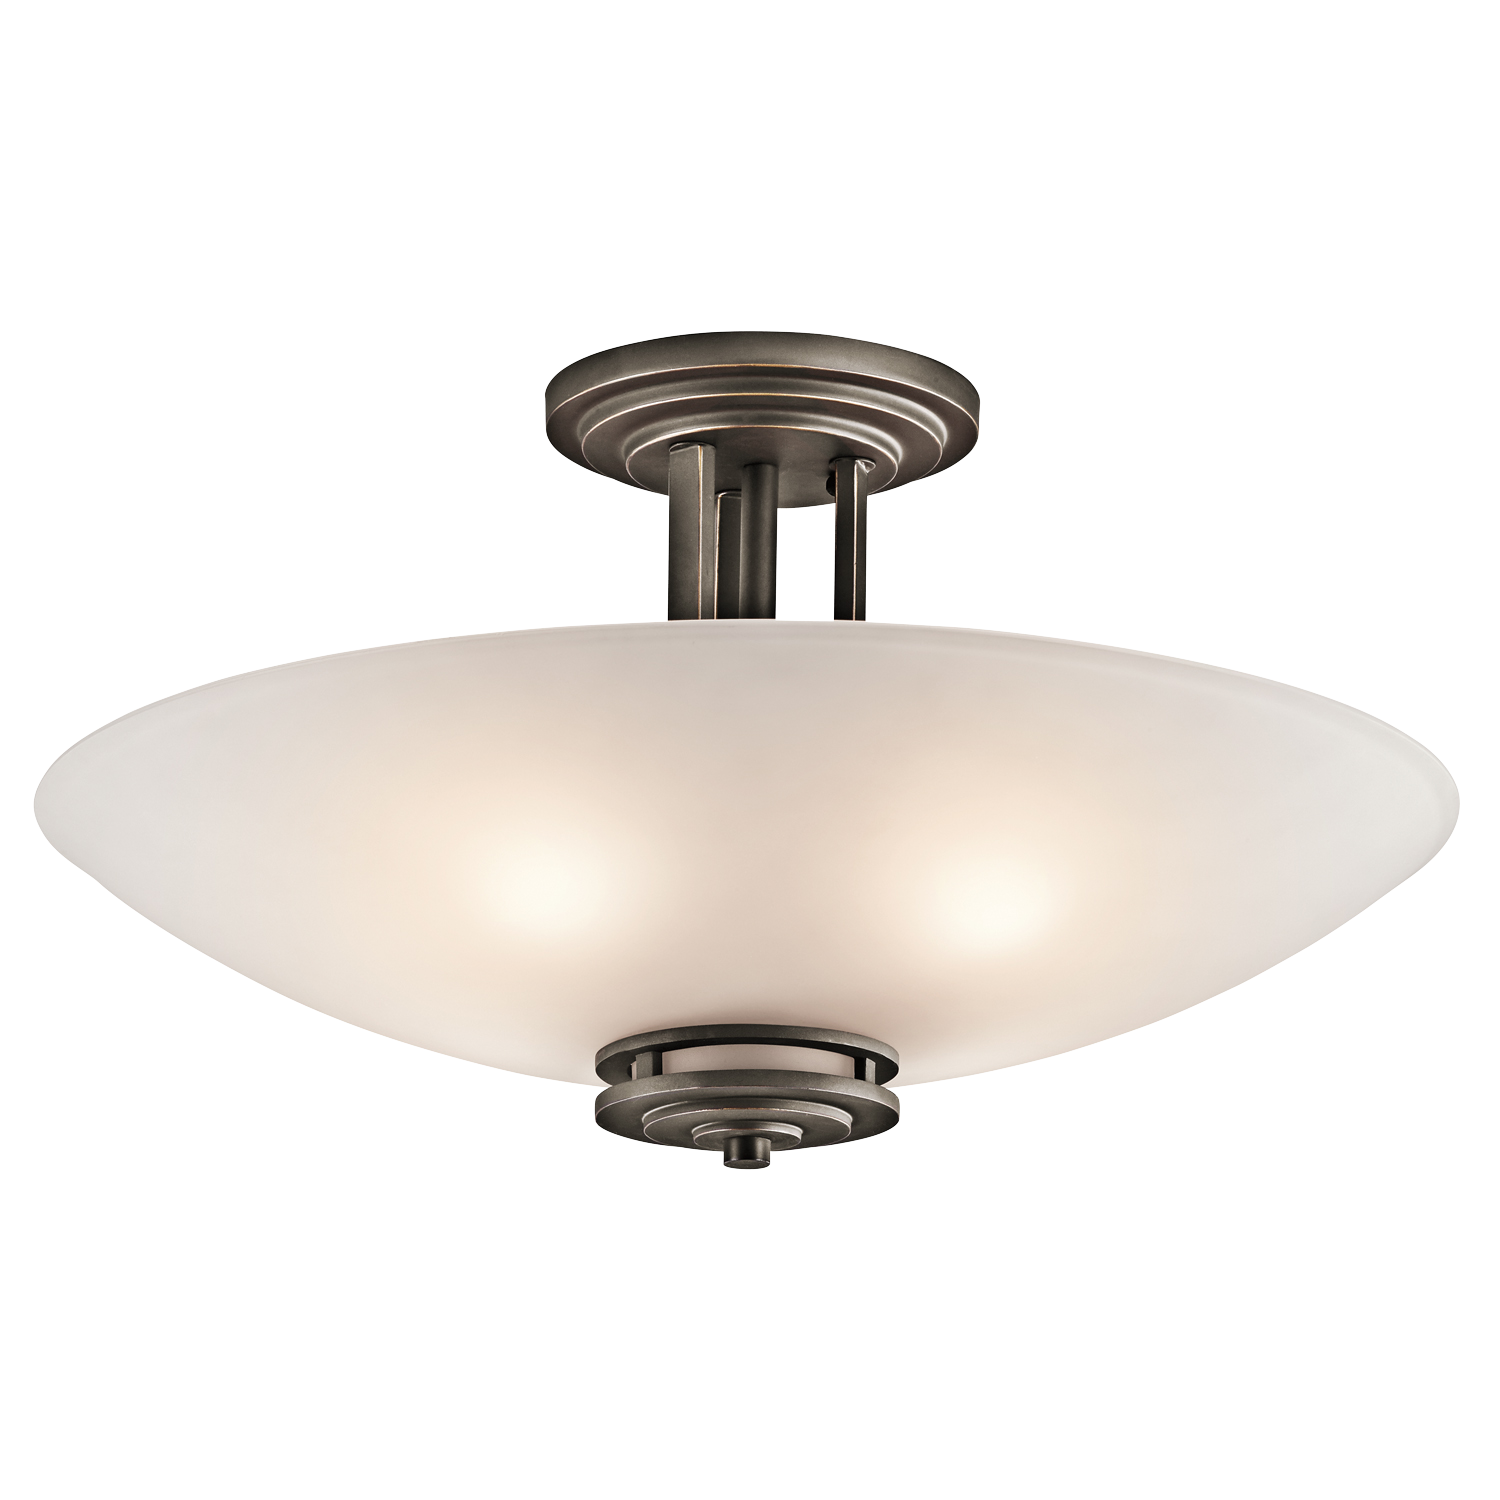 Immagine Trasparente della lampada da soffitto bianca PNG